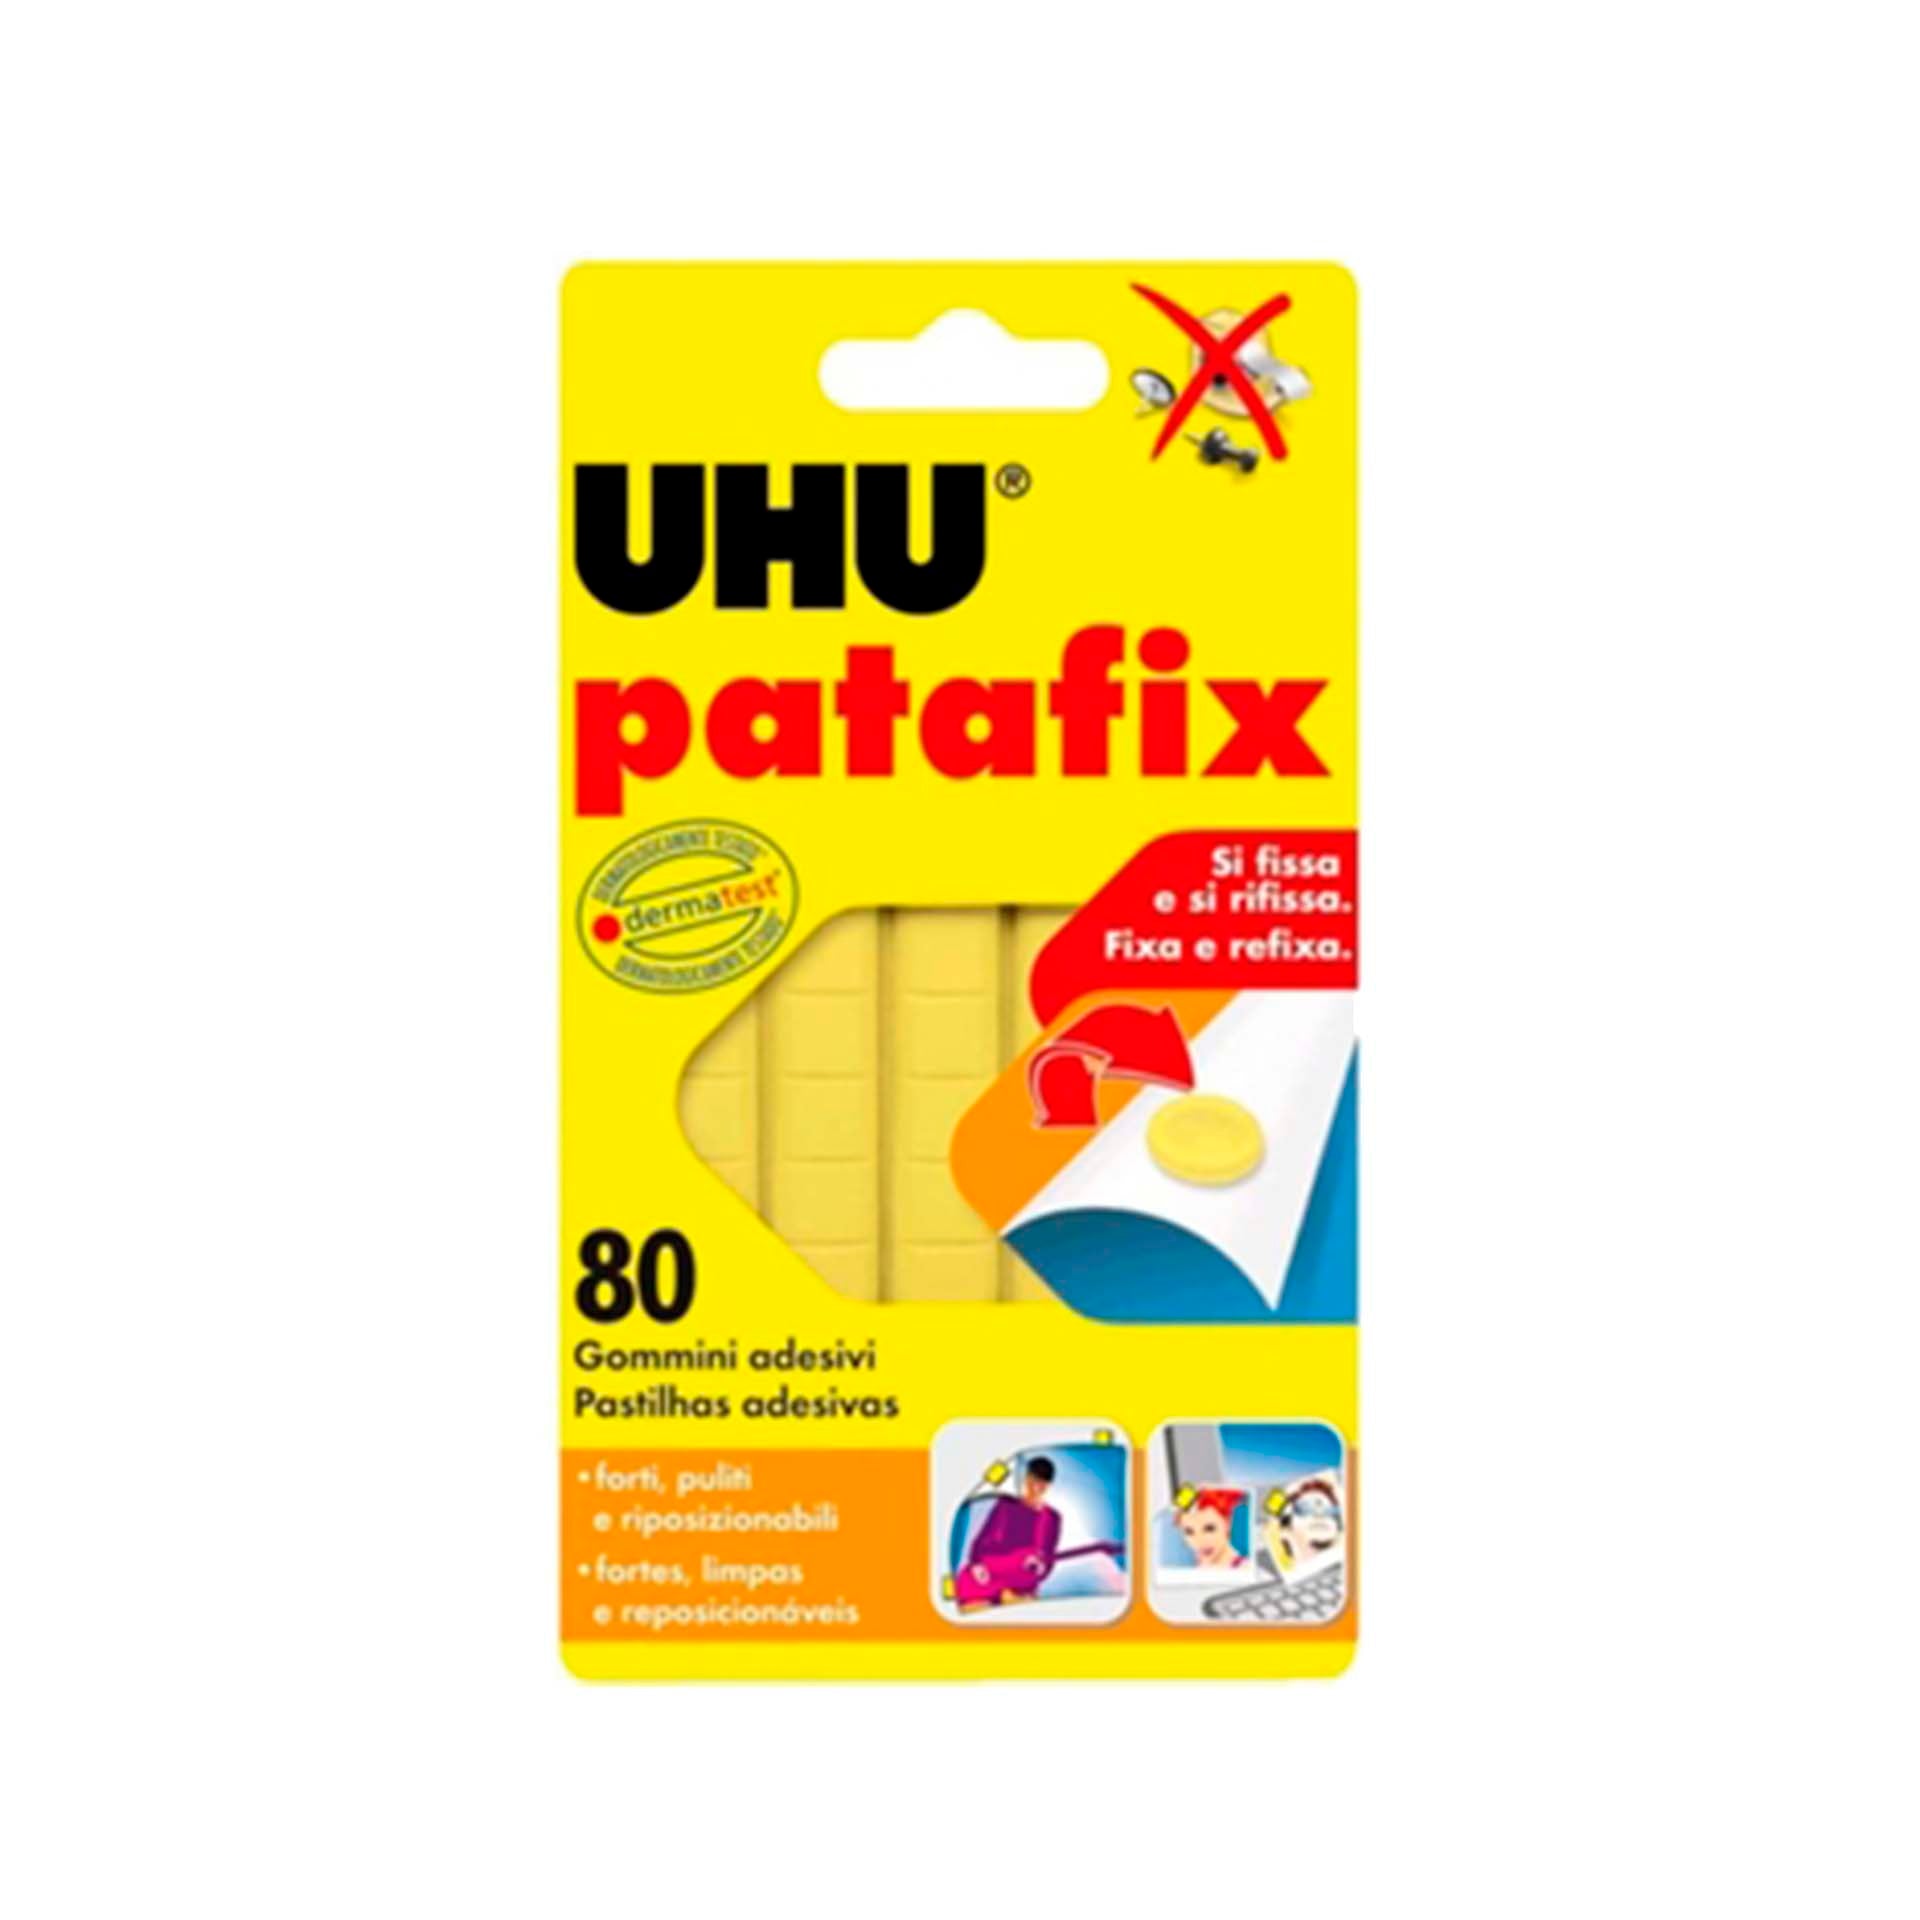 UHU Patafix Amarelo - 80 pastilhas